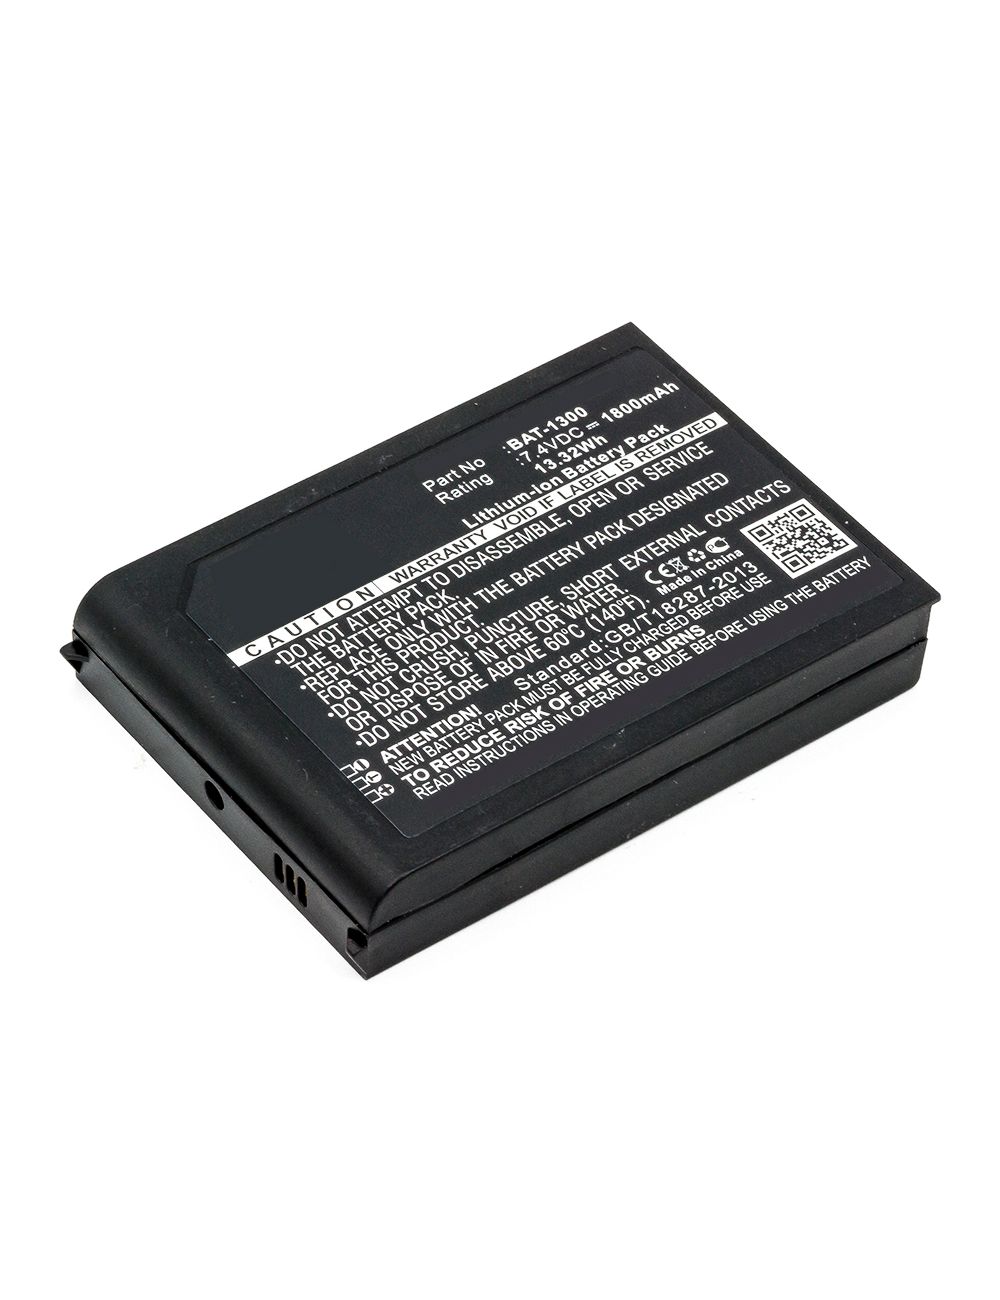 Bateria compatível para Bluebird Pidion BIP-1300. BAT-1300 7,4V 1800mAh 13,32Wh - 1